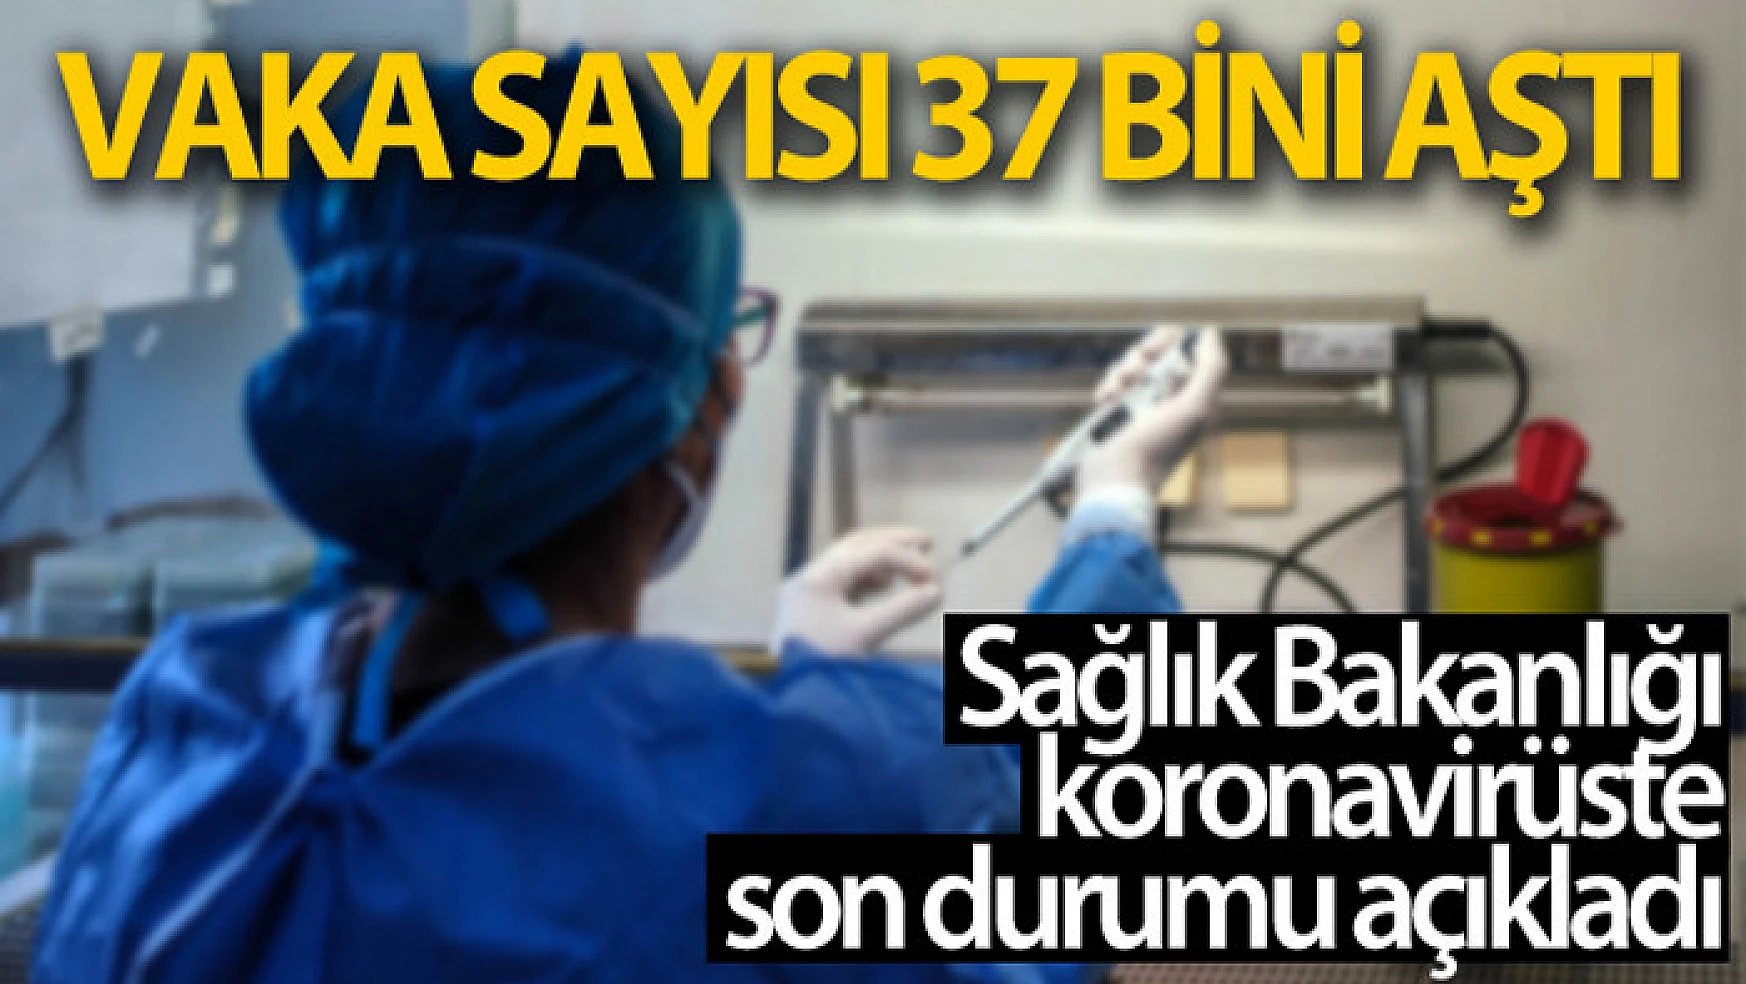 Türkiye'nin son 24 saatlik korona virüs tablosu açıklandı